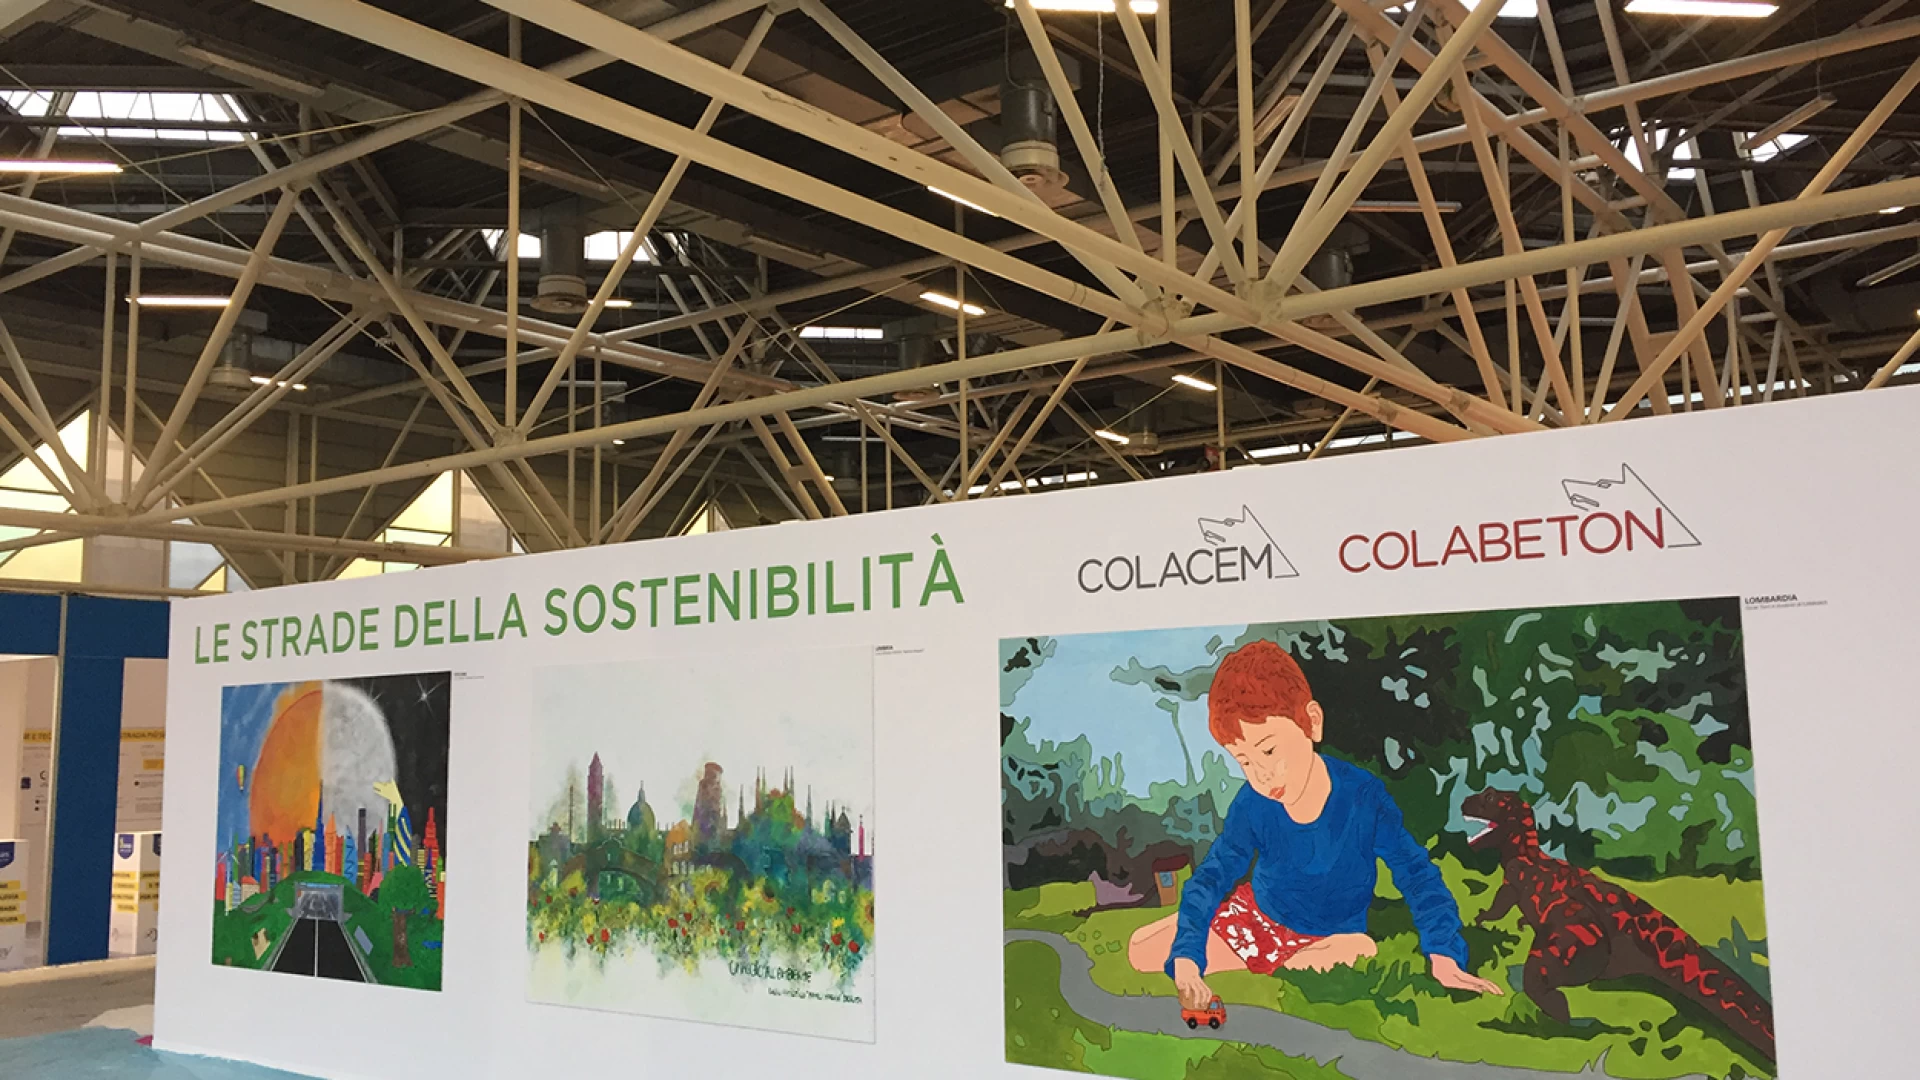 Le aziende informano: Colacem e Colabeton presente al Saie di Bologna. Occhi puntati sui nuovi calcestruzzi fotoluminescenti.